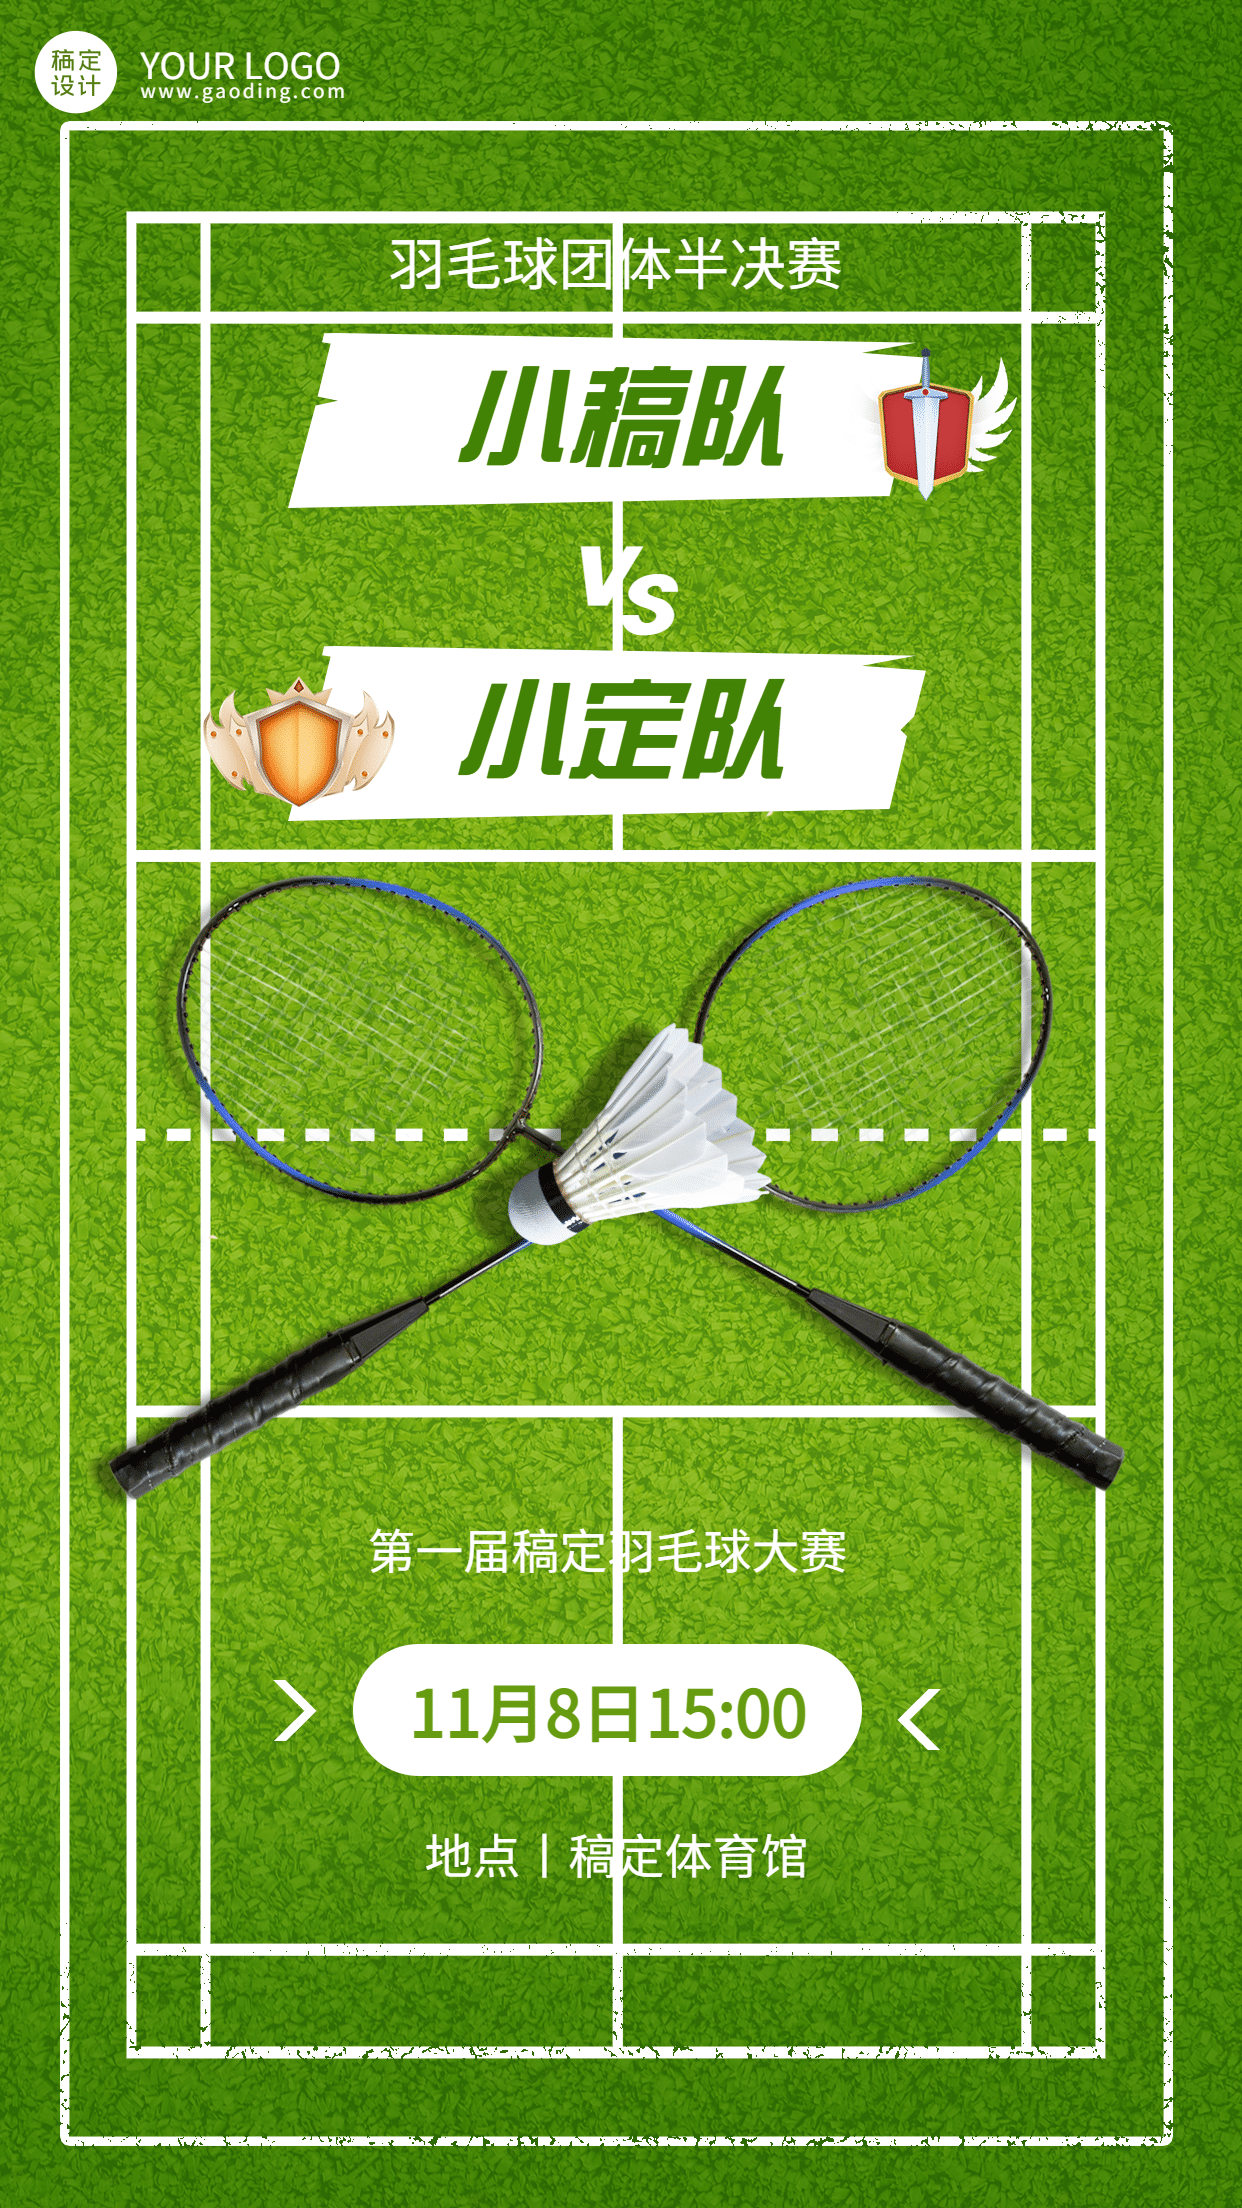 羽毛球运动赛事开赛宣传海报